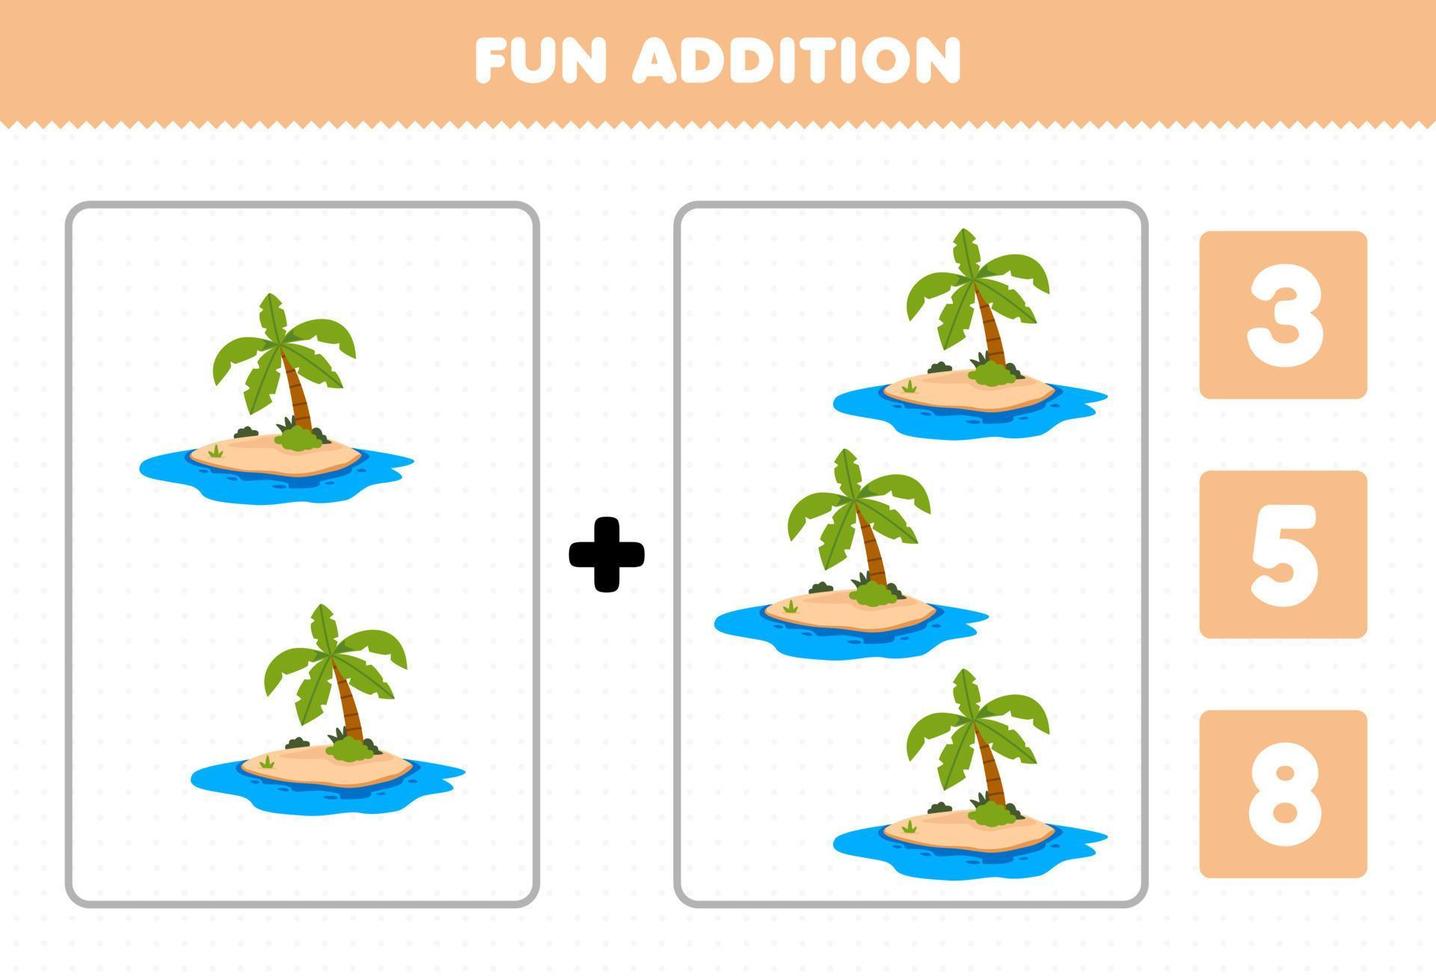 juego educativo para niños divertido además por conteo y elija la respuesta correcta de la hoja de trabajo de naturaleza imprimible de isla de dibujos animados lindo vector